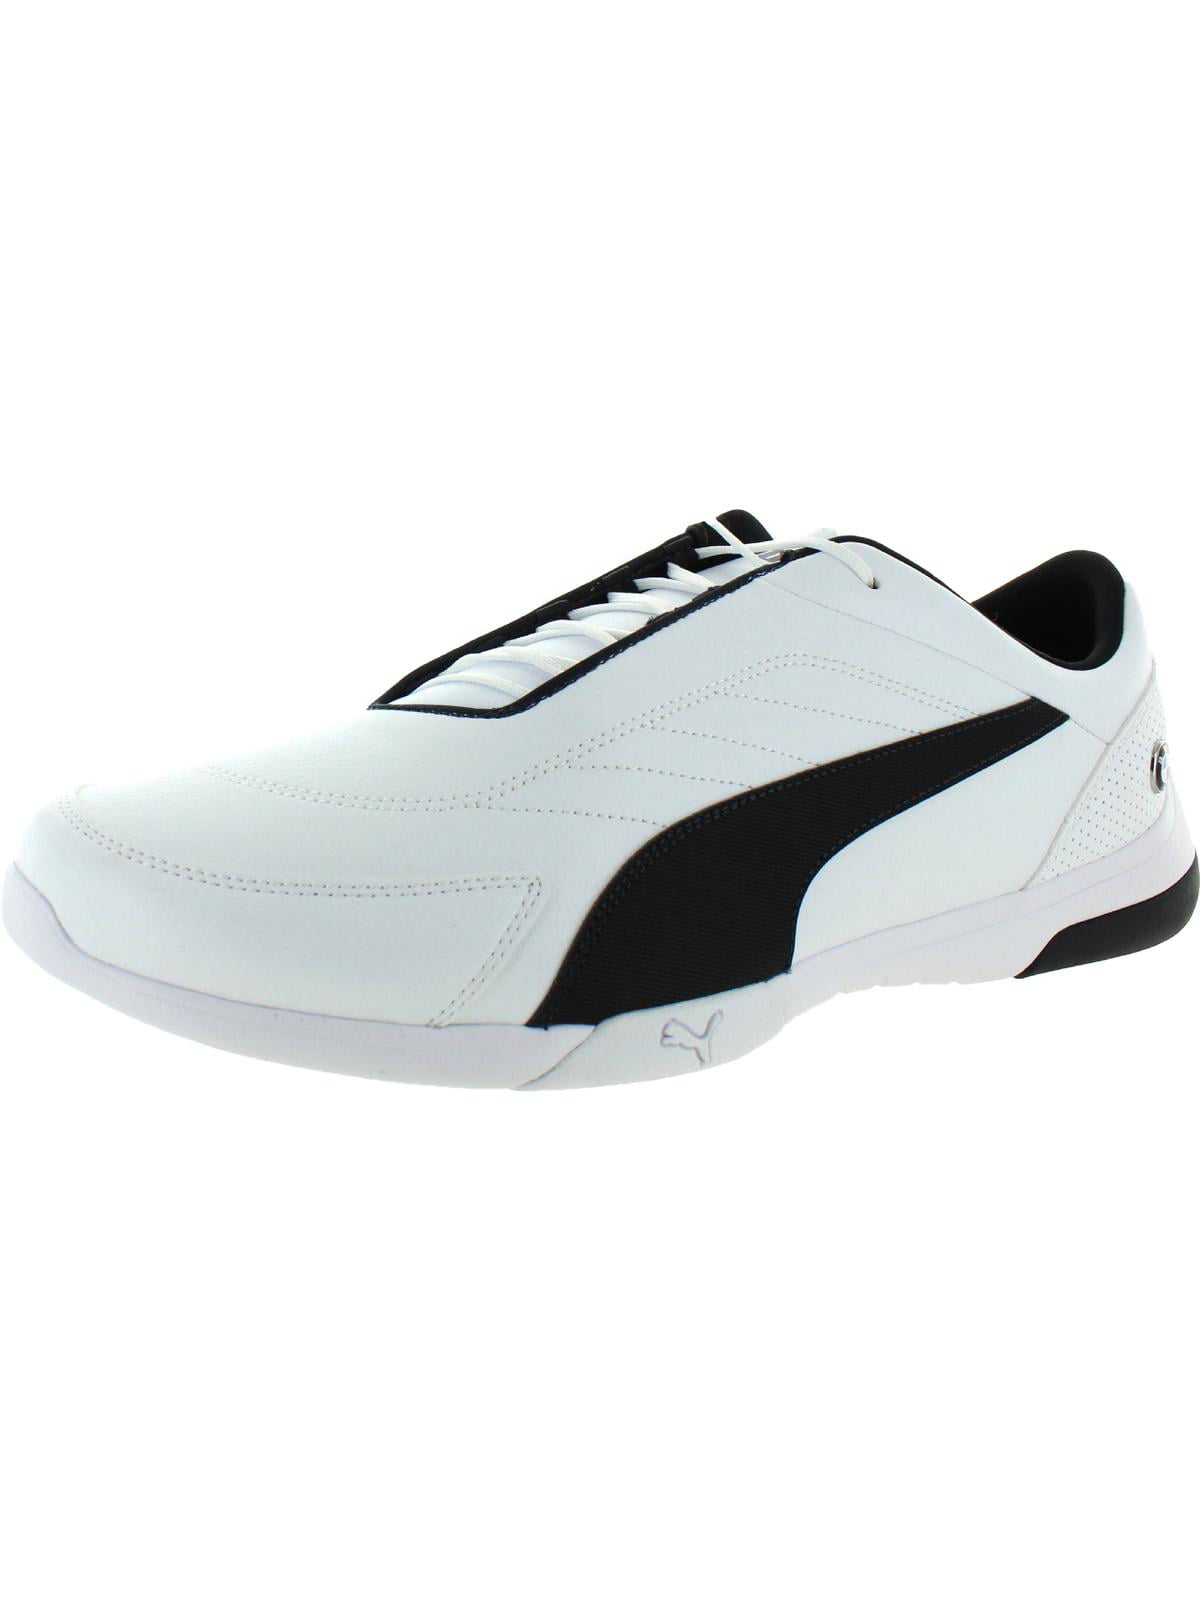 Puma BMW M Motorsport Ridge Cat Men's Sneakers Shoes US Size 12